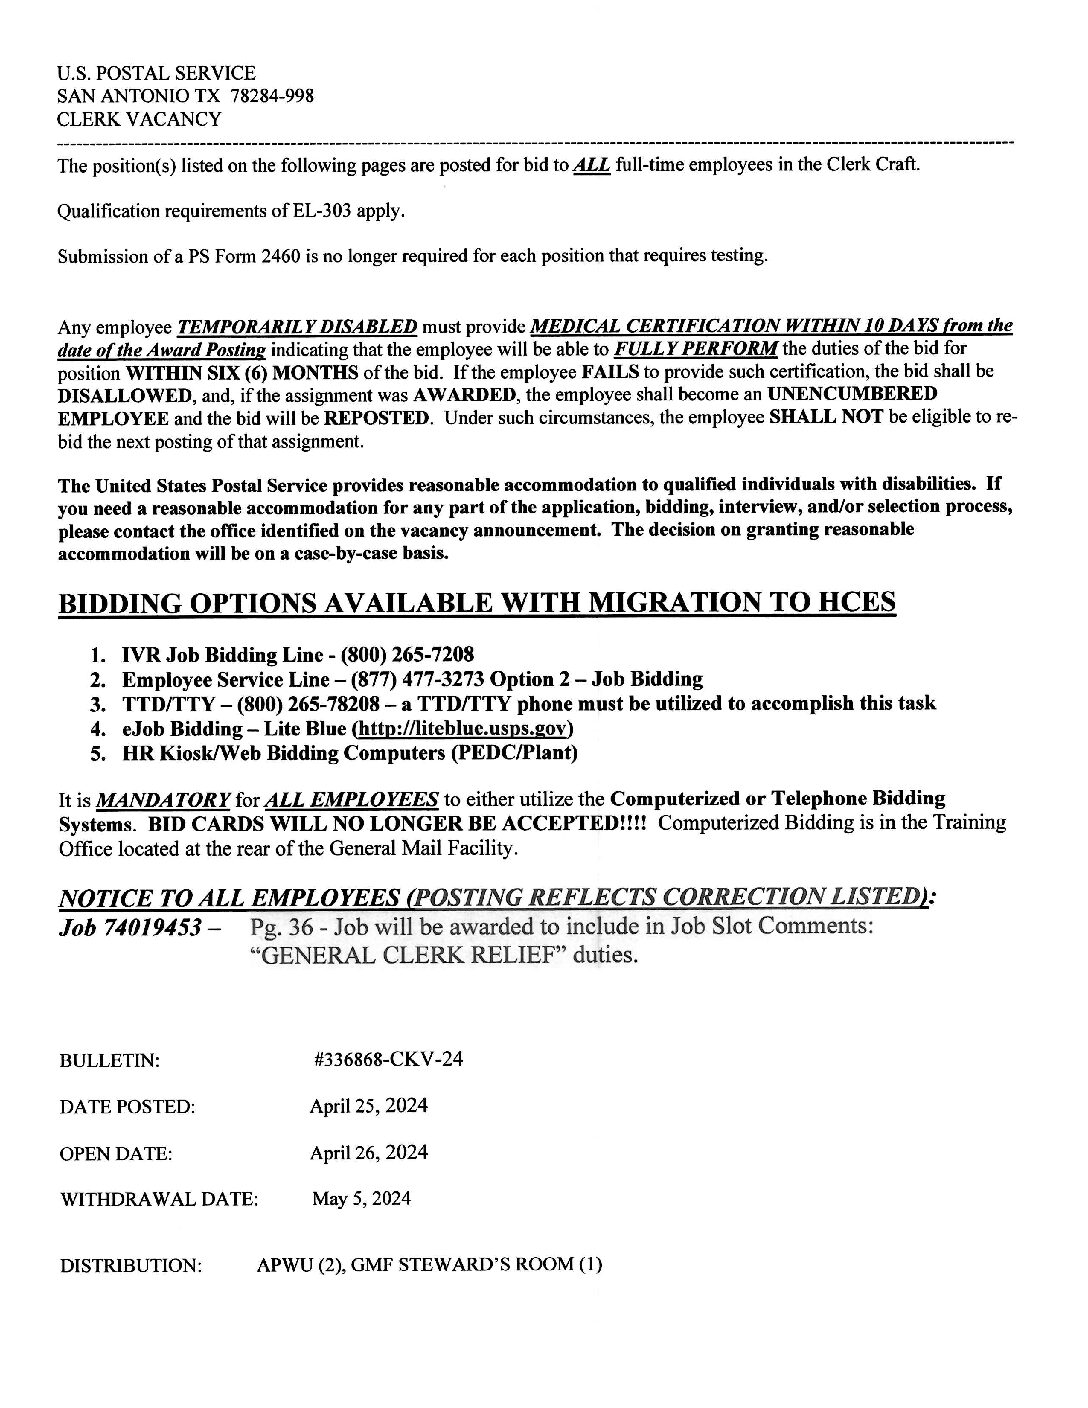 E-Flash Clerk Job Vacancy Bulletin 4/25/2024 - 